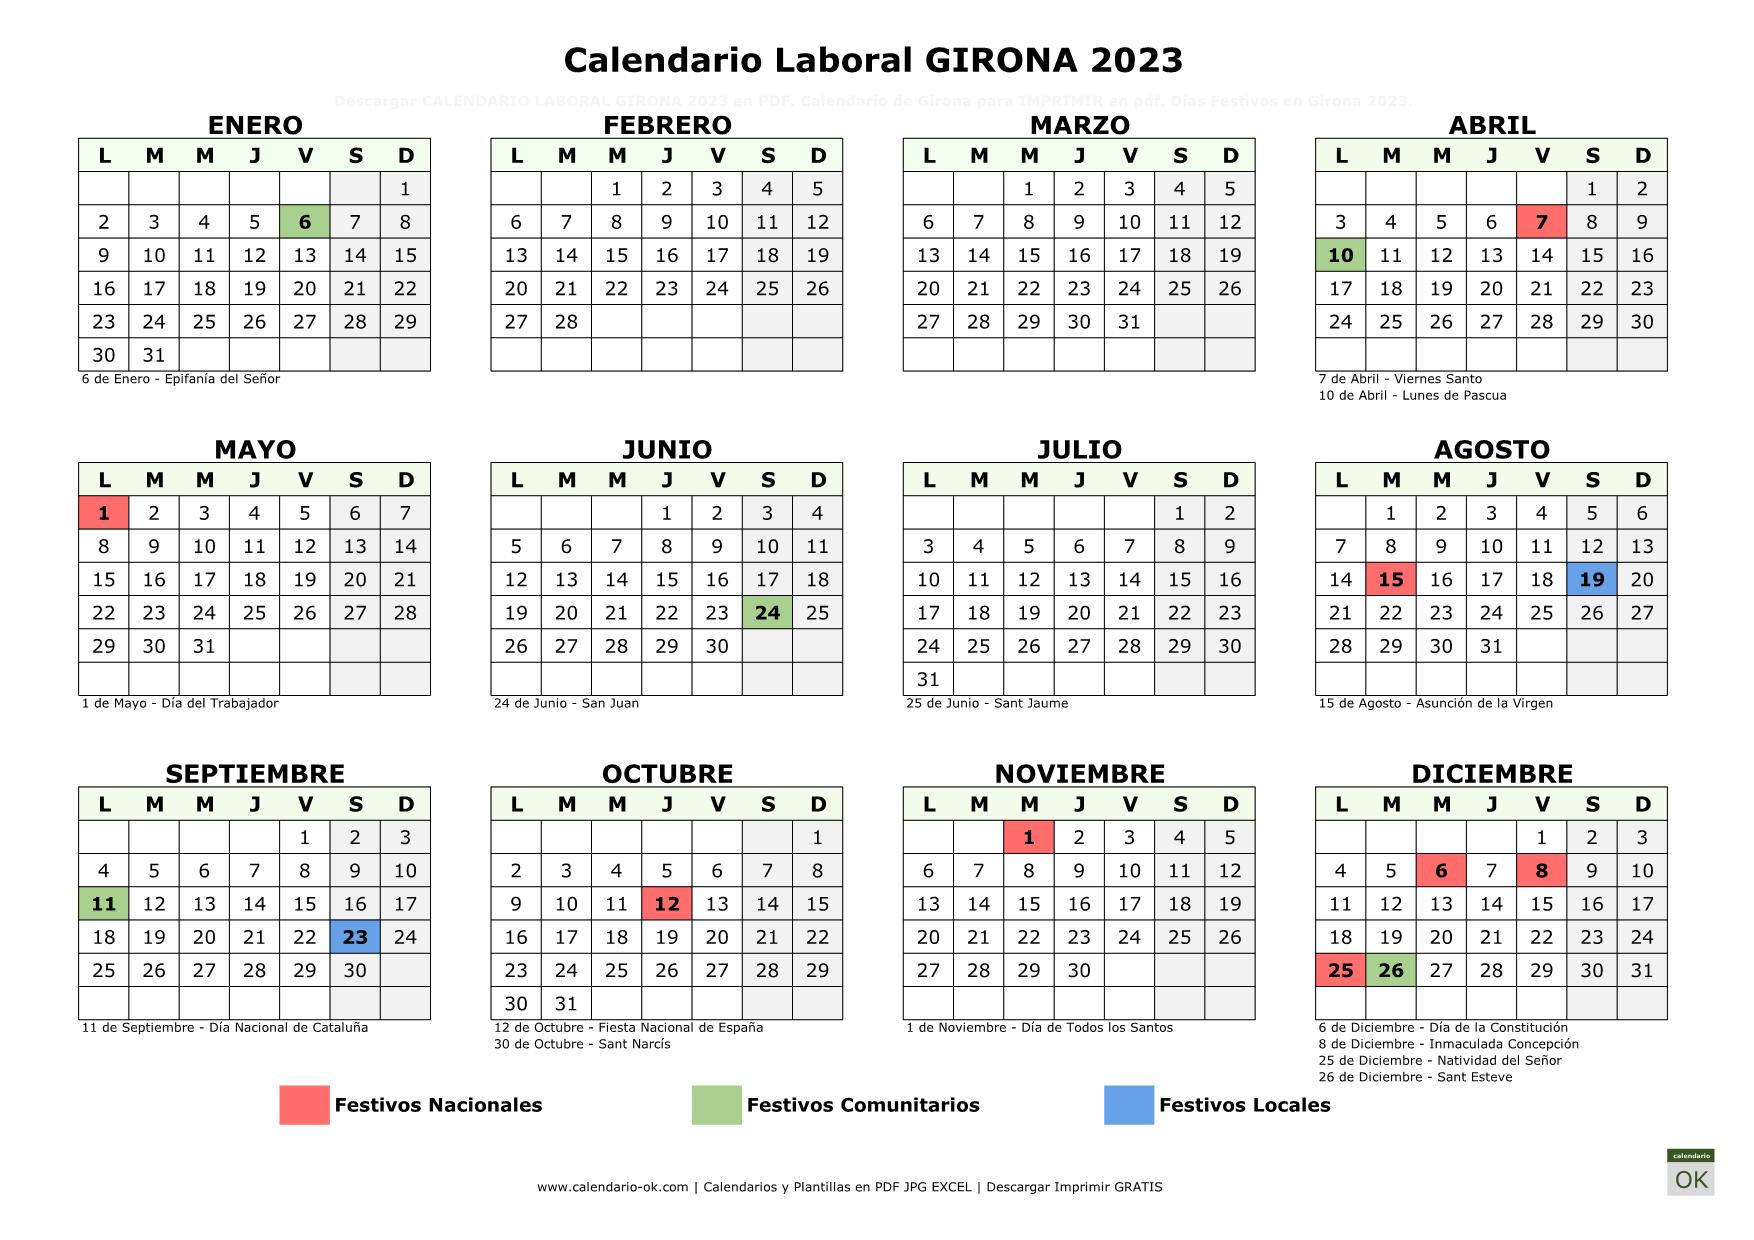 Calendario Laboral Girona 2023 horizontal